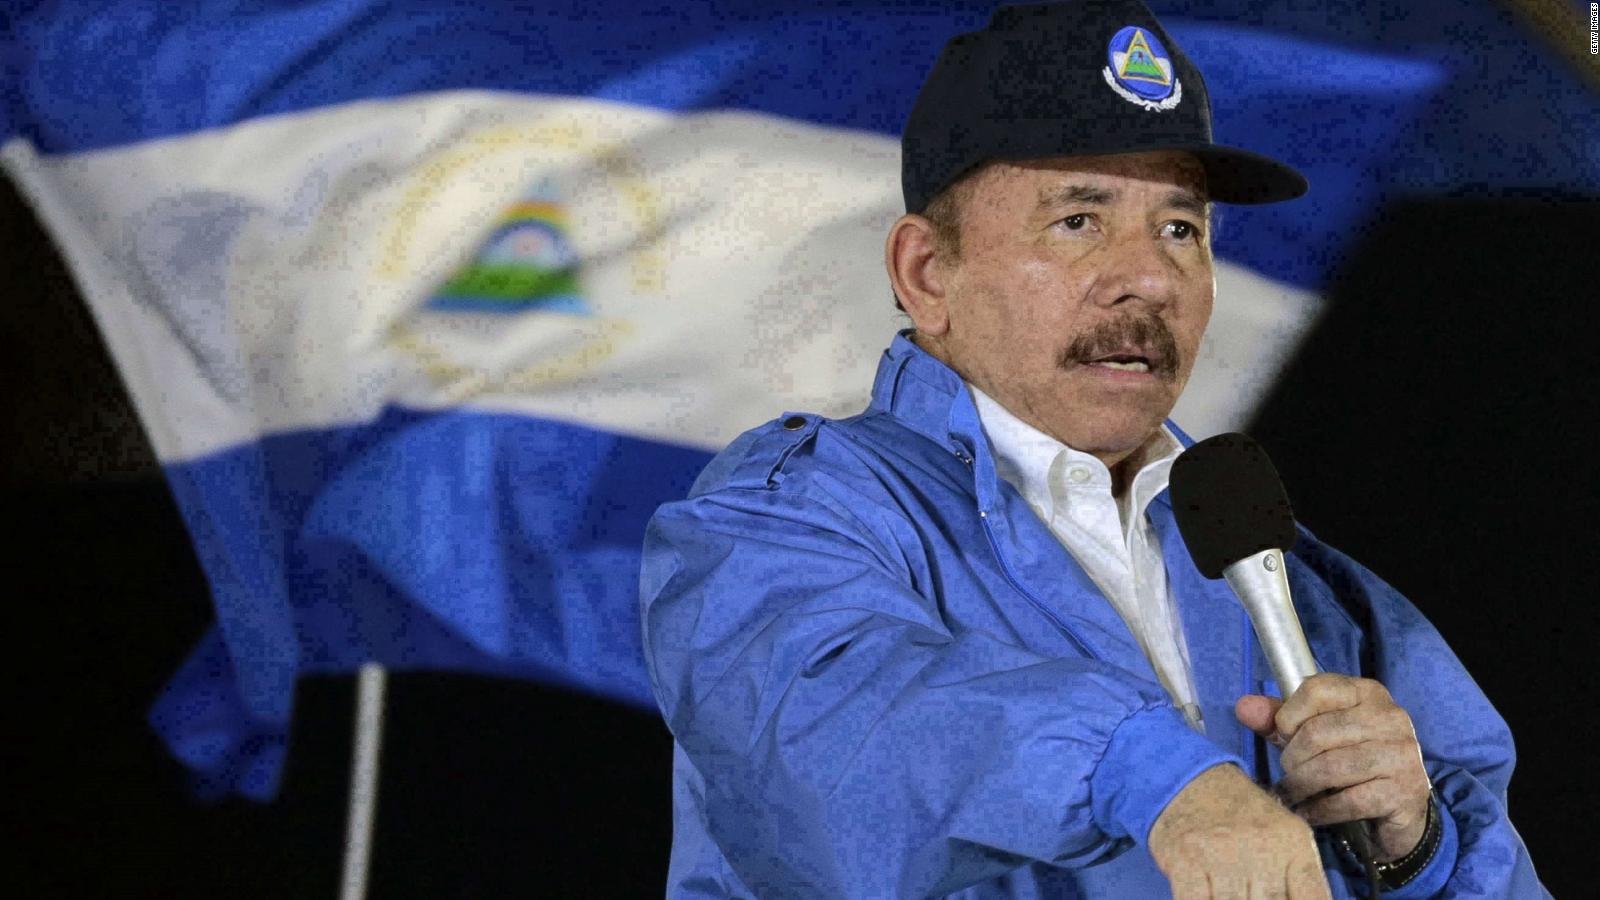 ONU aprueba investigación sobre posibles violaciones a derechos humanos en Nicaragua